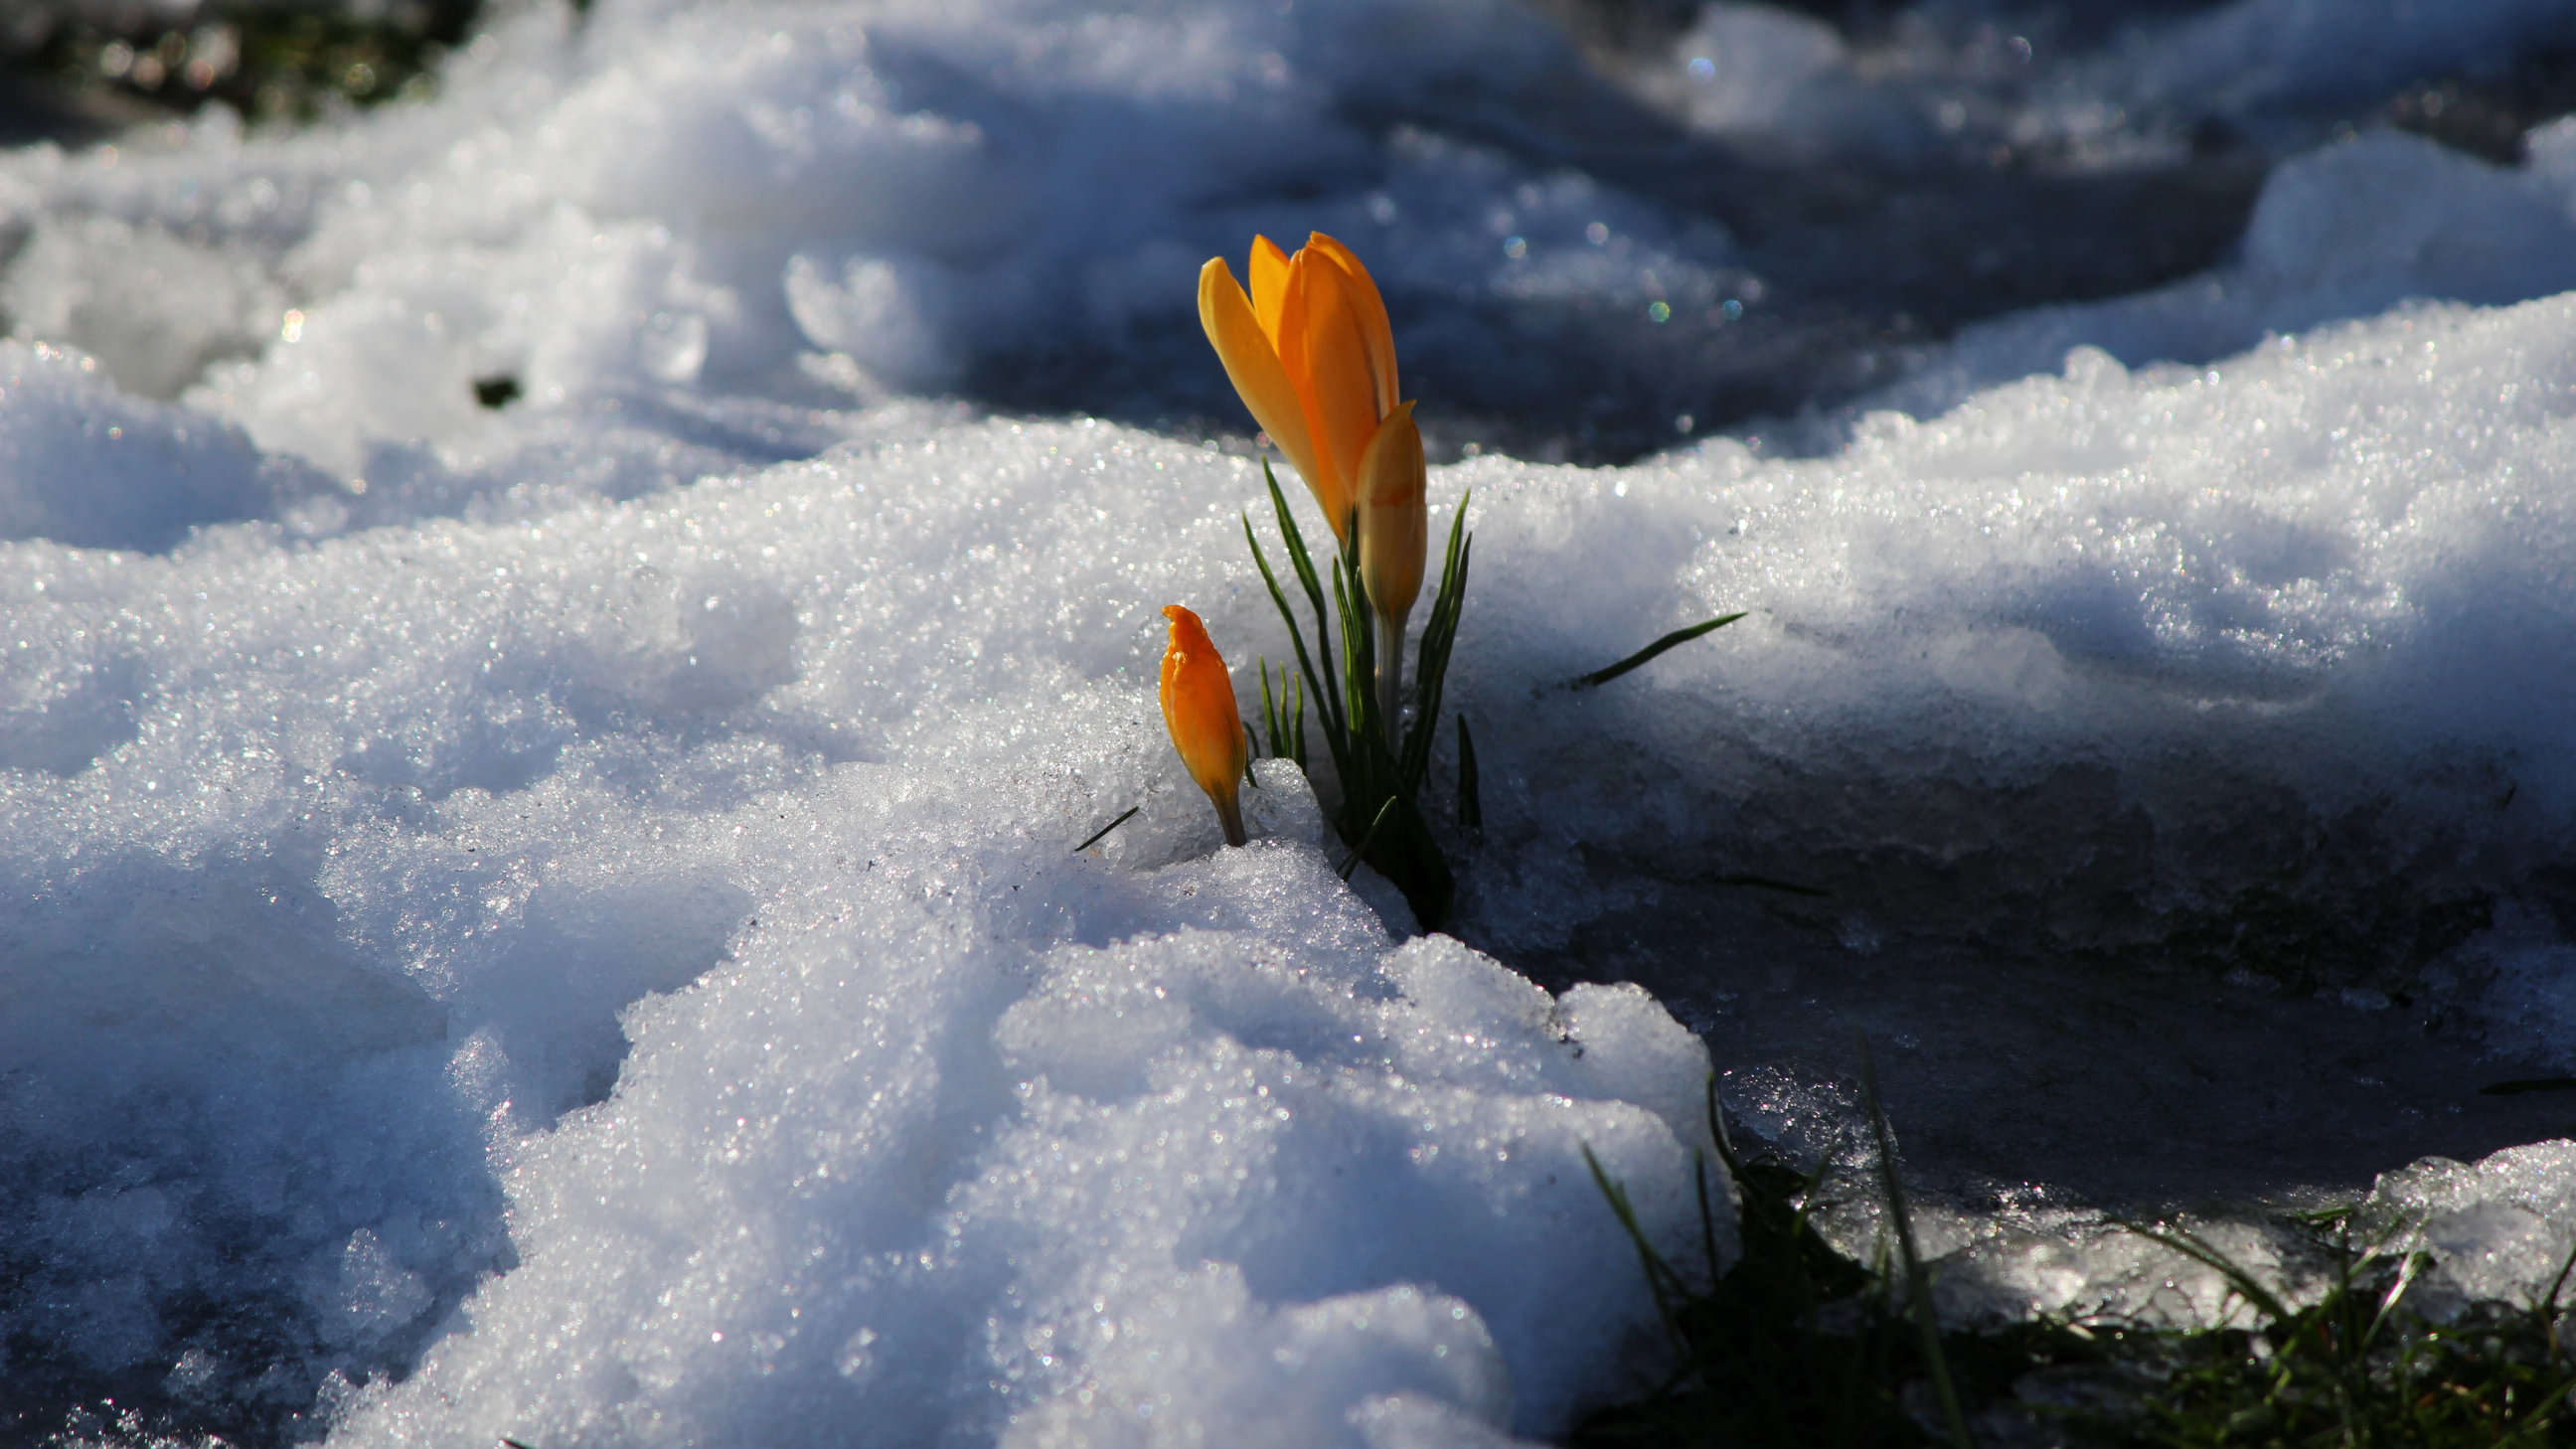 Fiore sboccia sulla neve